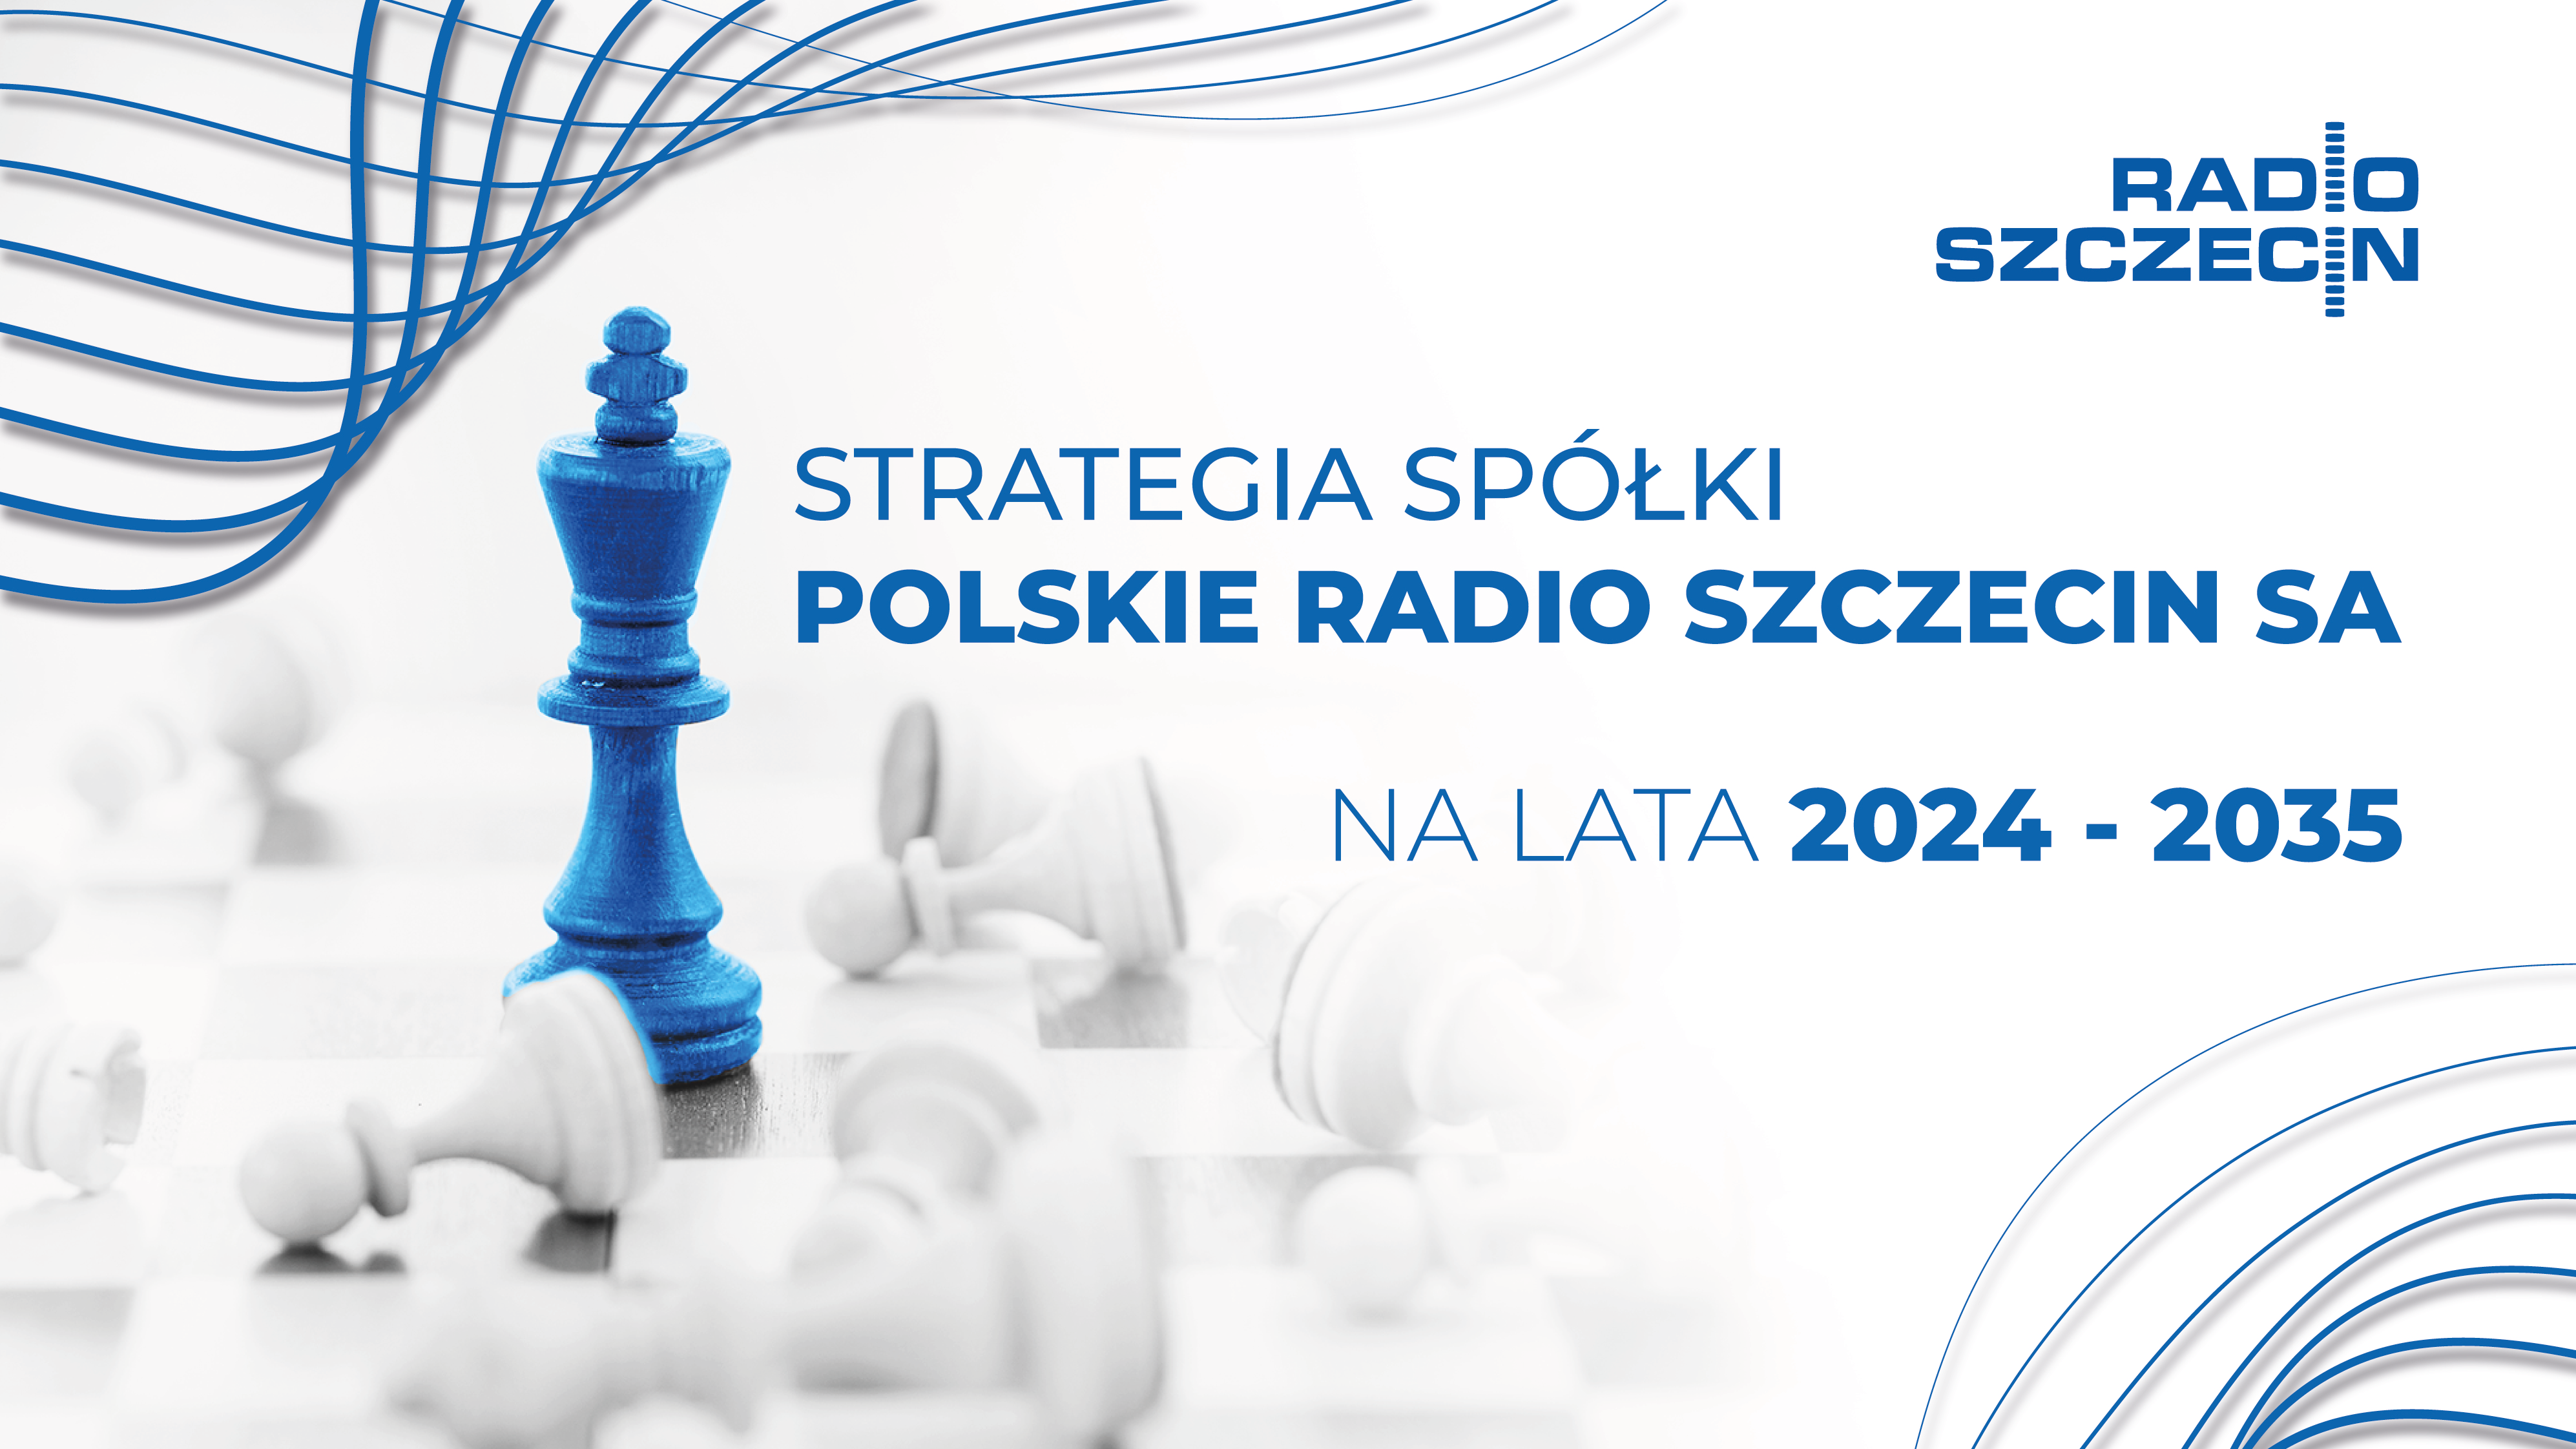 Strategia Polskiego Radia Szczecin SA